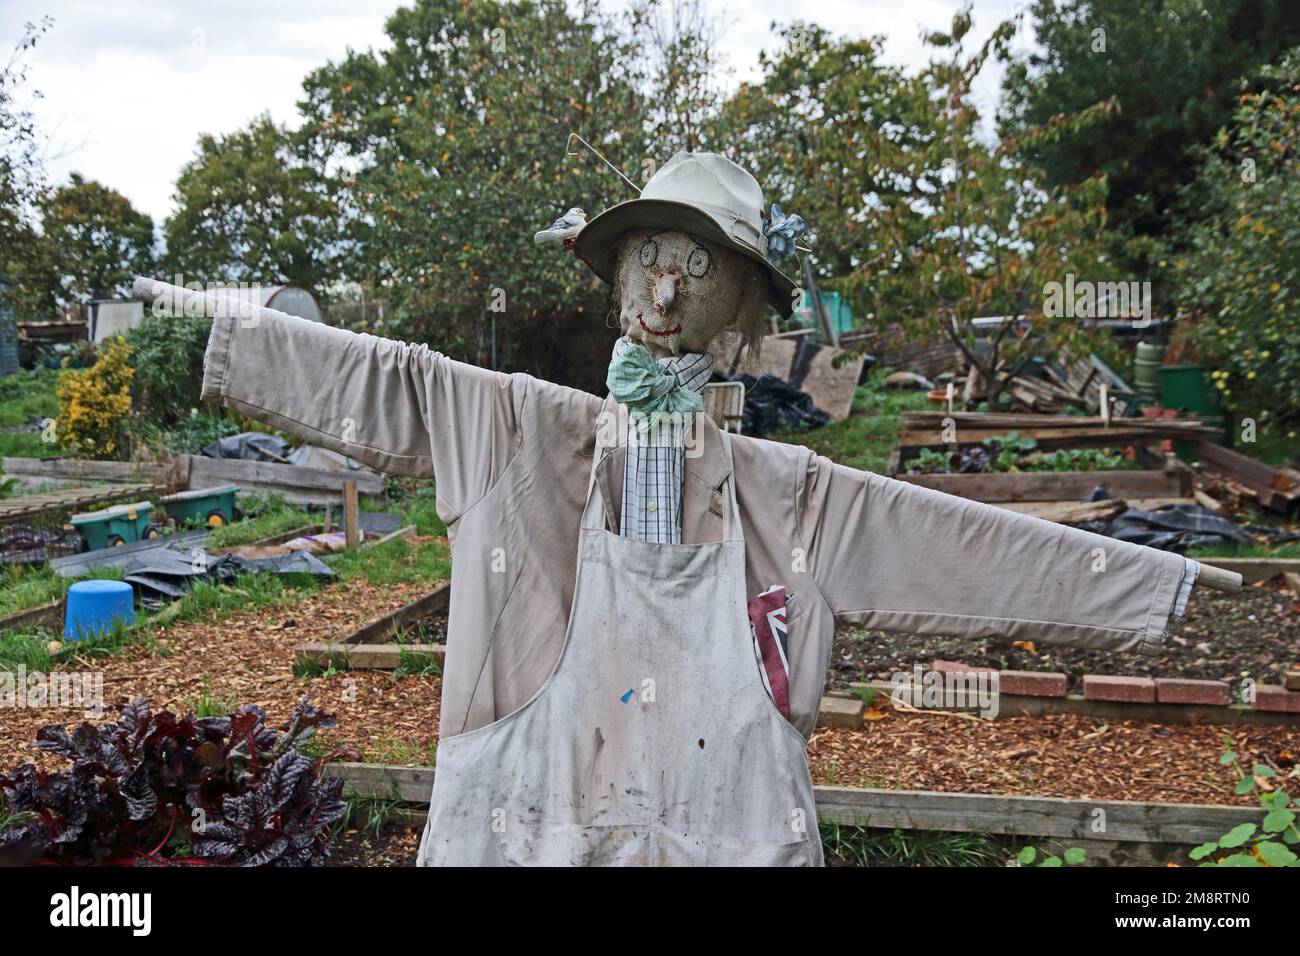 Scarecrow on allotment, Oxhey, Hertfordshire Stock Photo